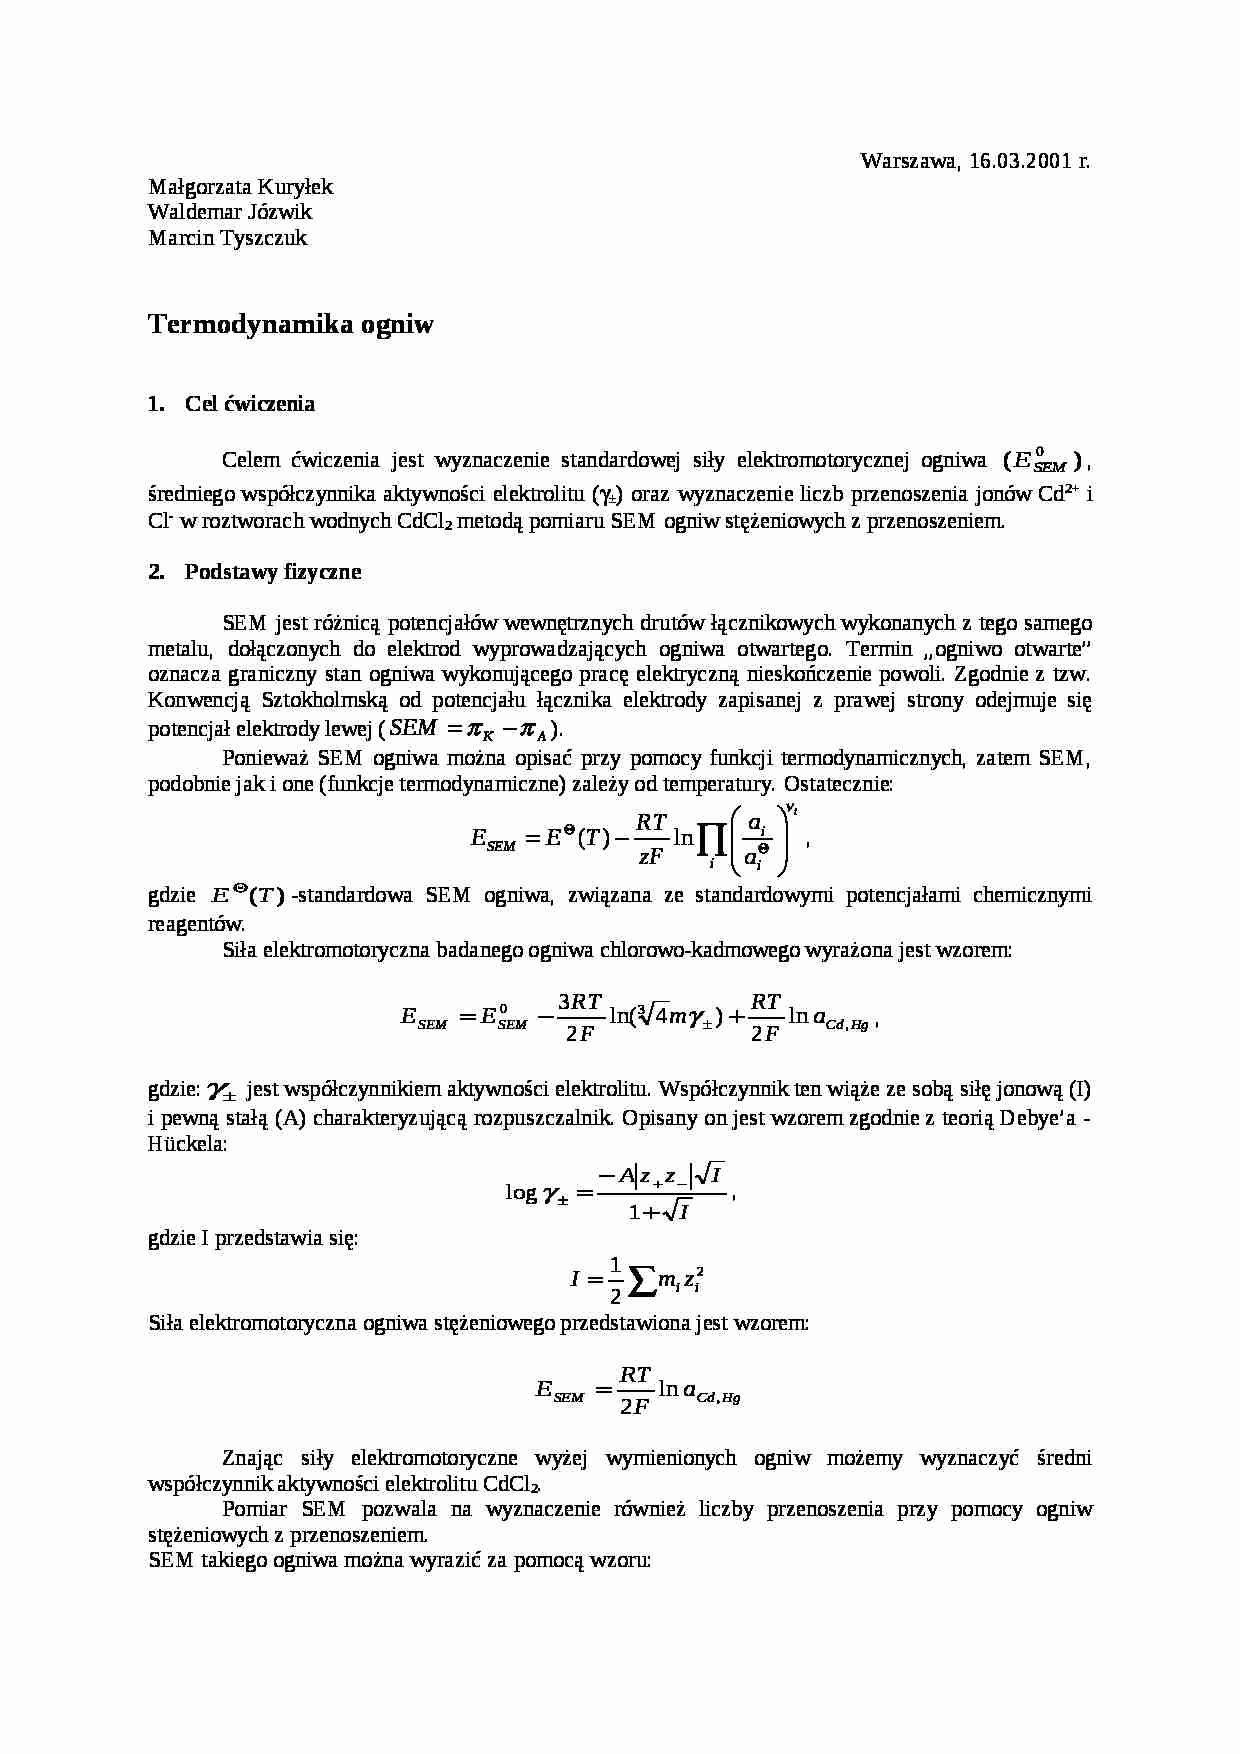 Termodynamika ogniw - ćwiczenia - strona 1